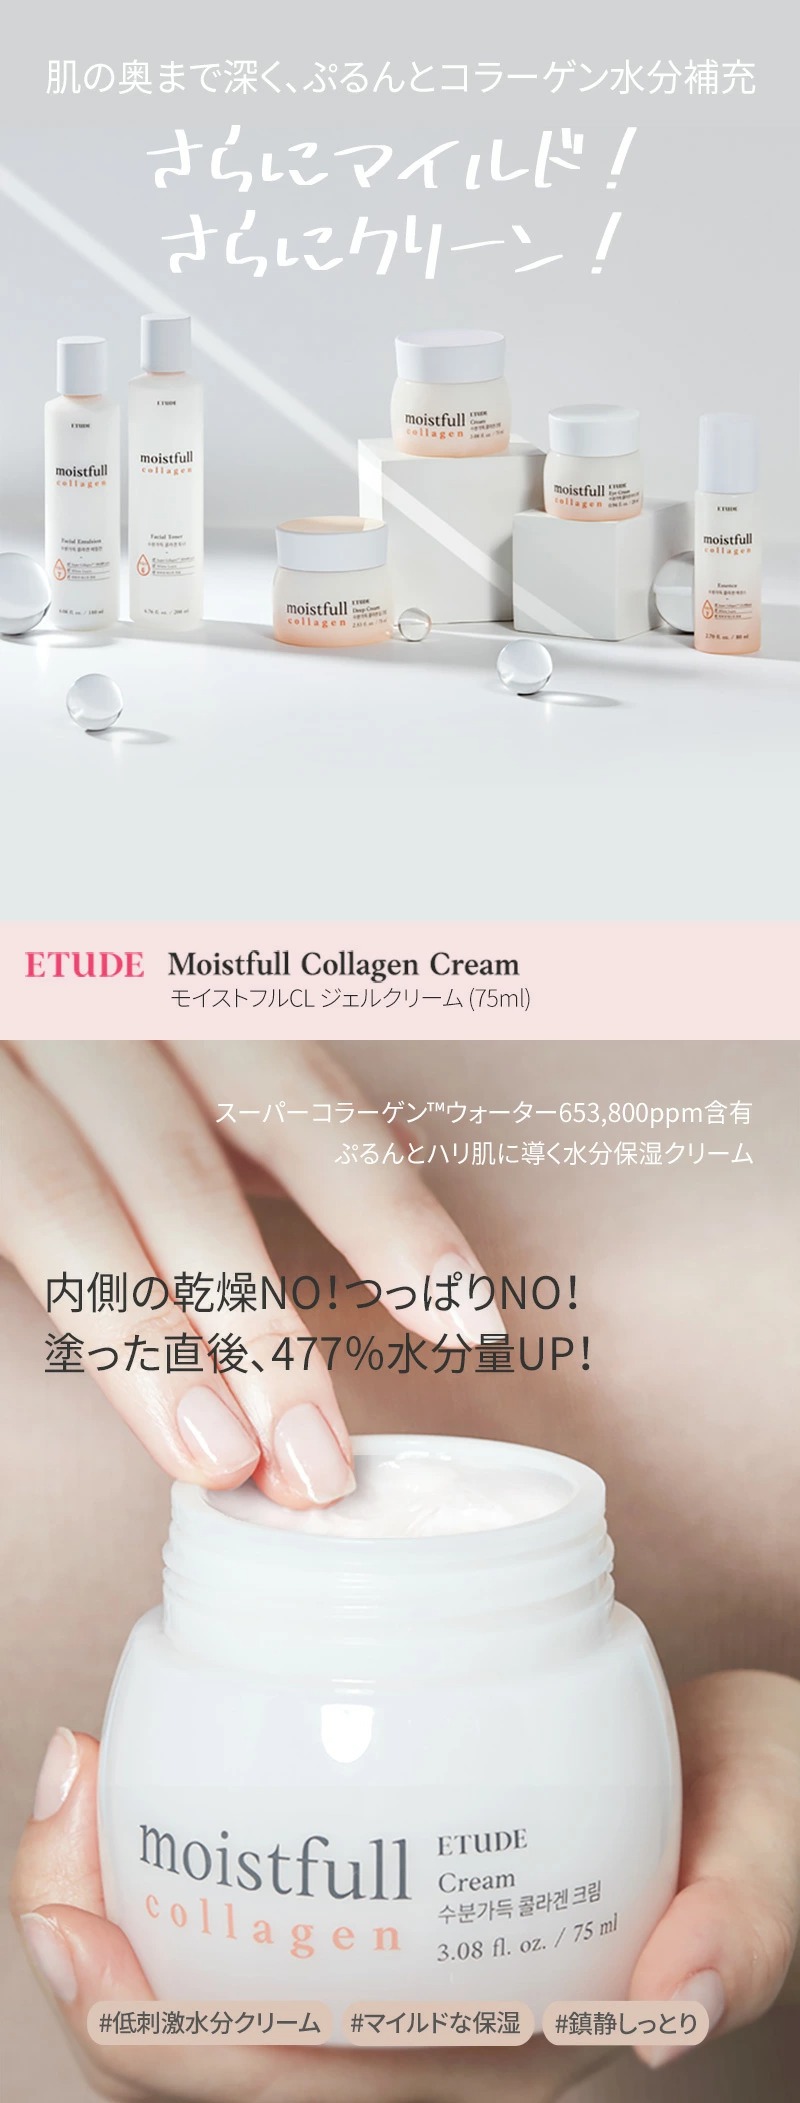 [ETUDE HOUSE]モイストフルCL ジェルクリーム75ml/水分たっぷりコラーゲンクリーム 韓国化粧品